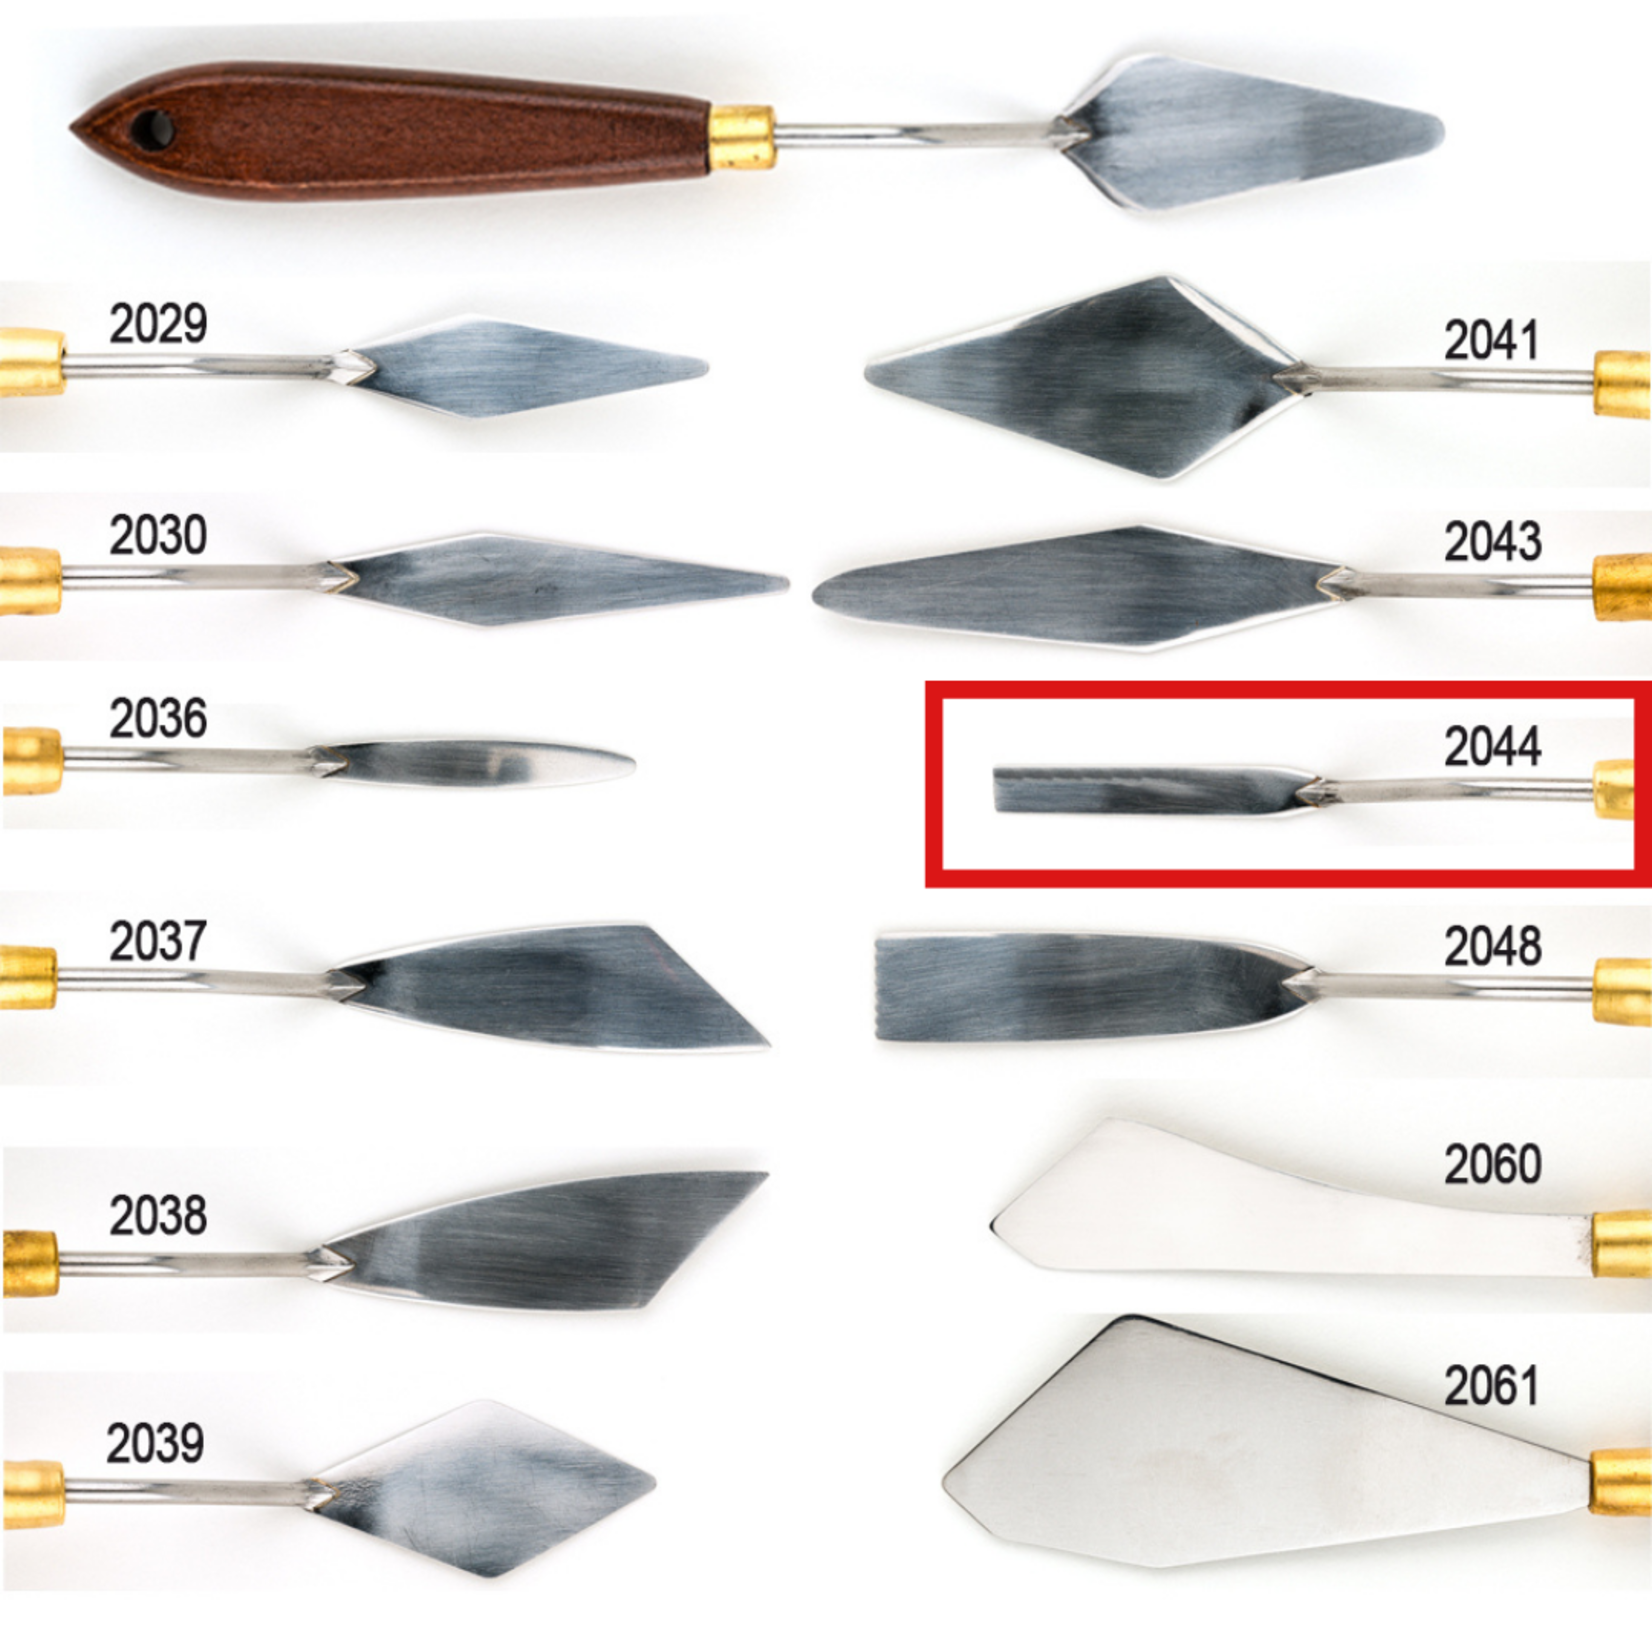 DEMCO DEMCO ART PRO PALETTE KNIFE 2044